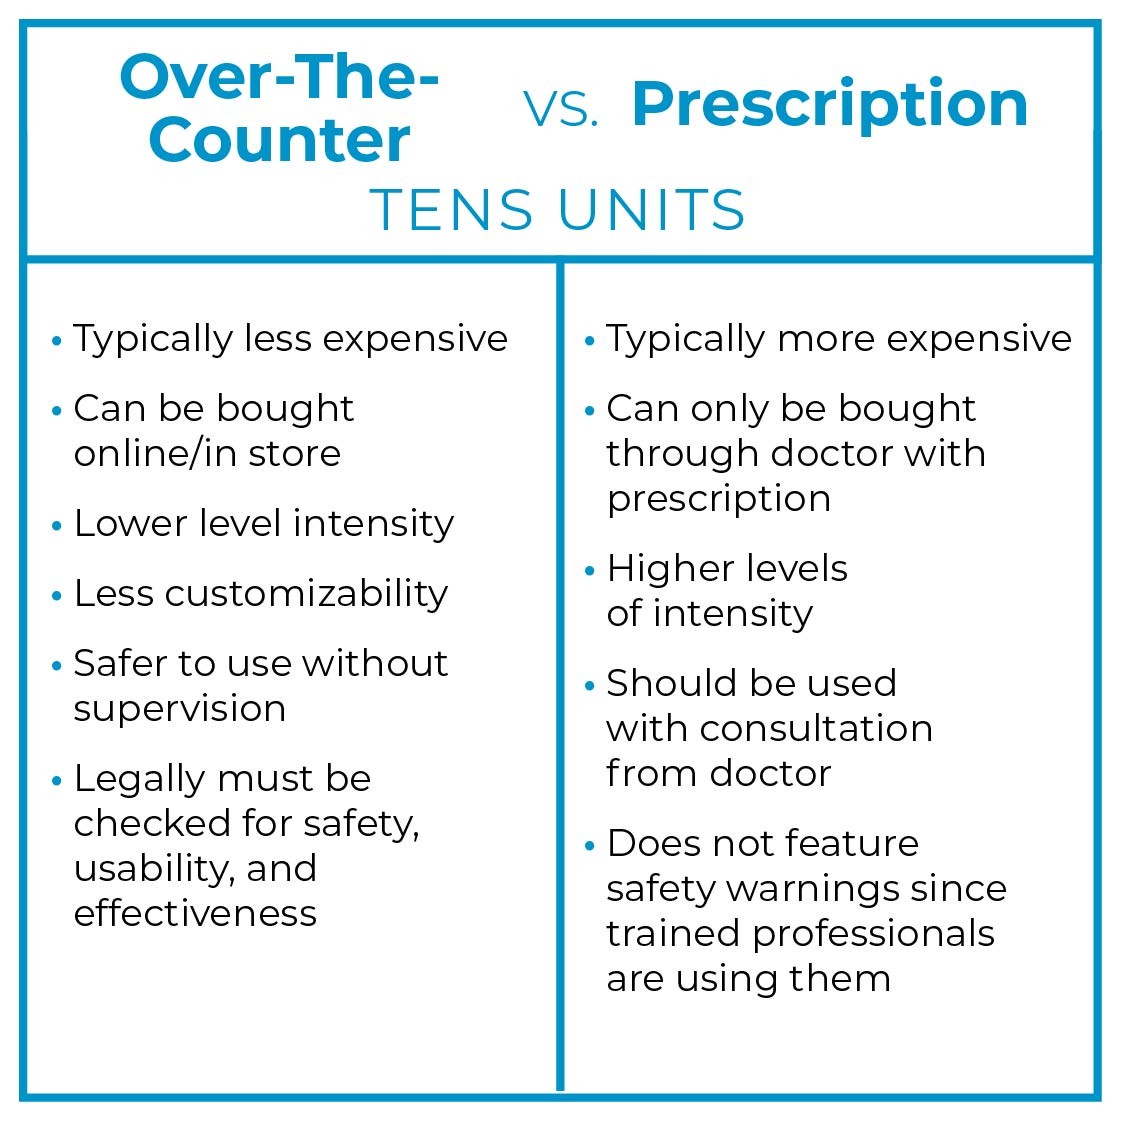 Over-the-Counter vs Prescription TENS Units